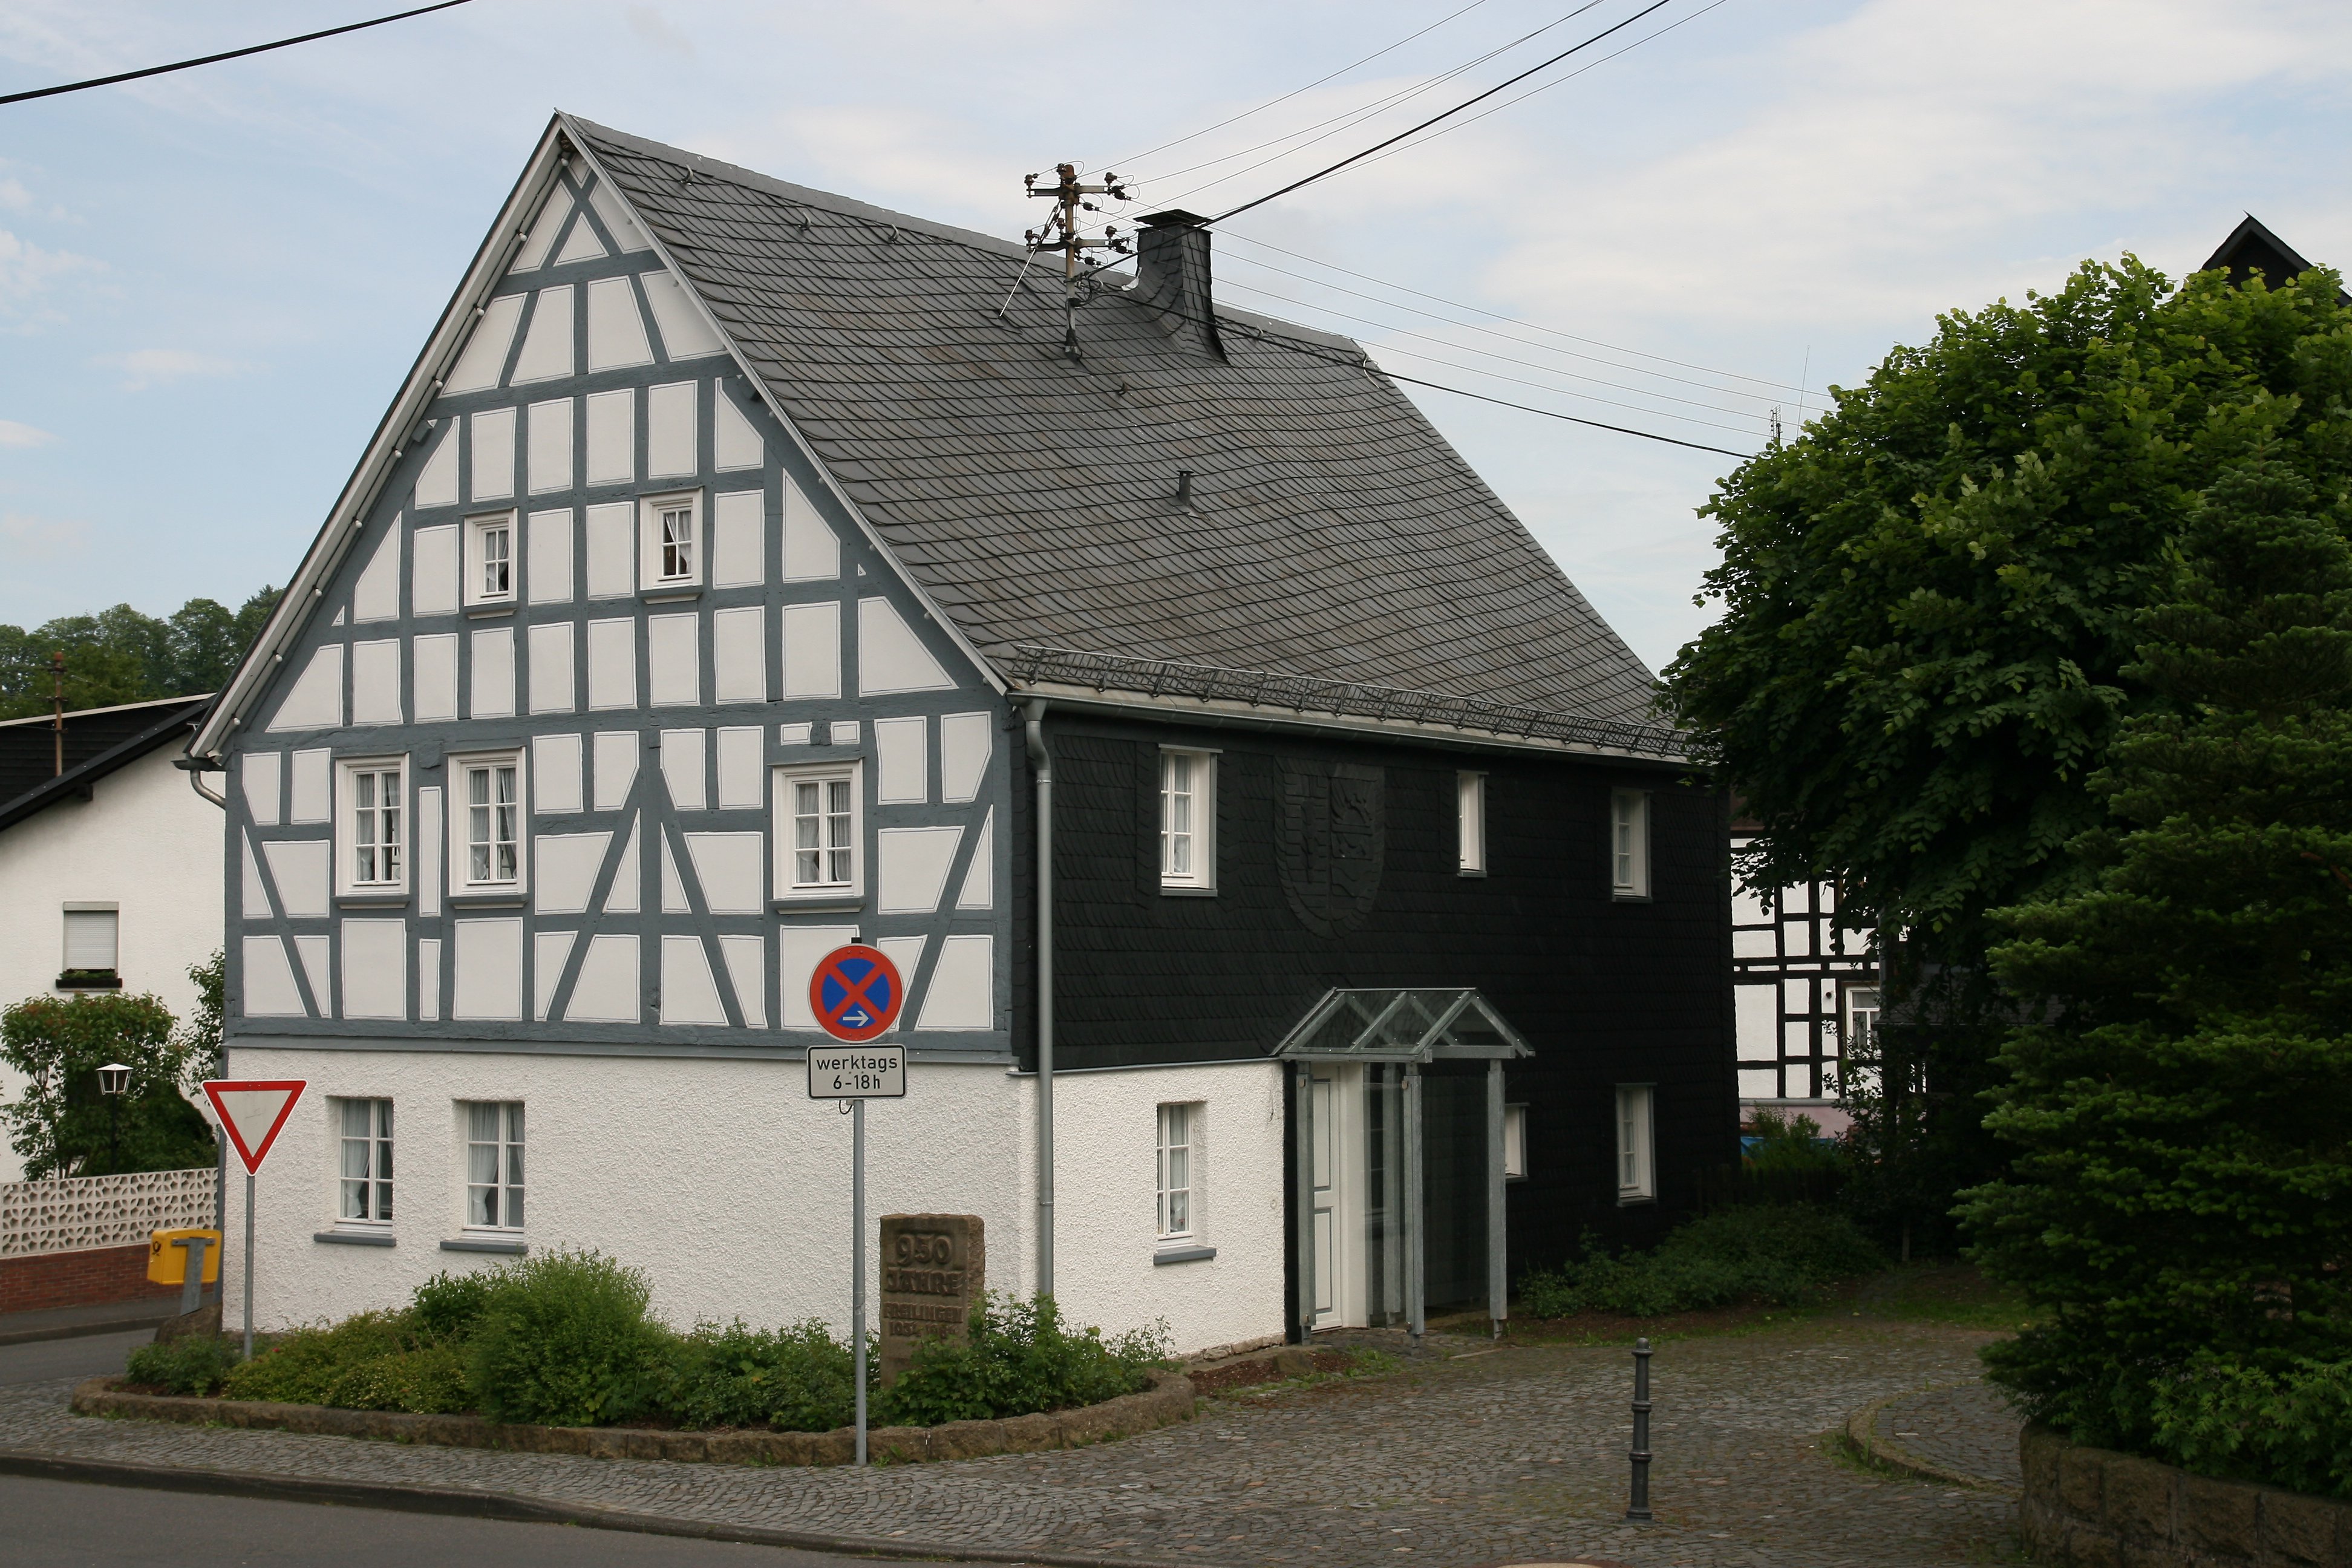 Westerwald Germany